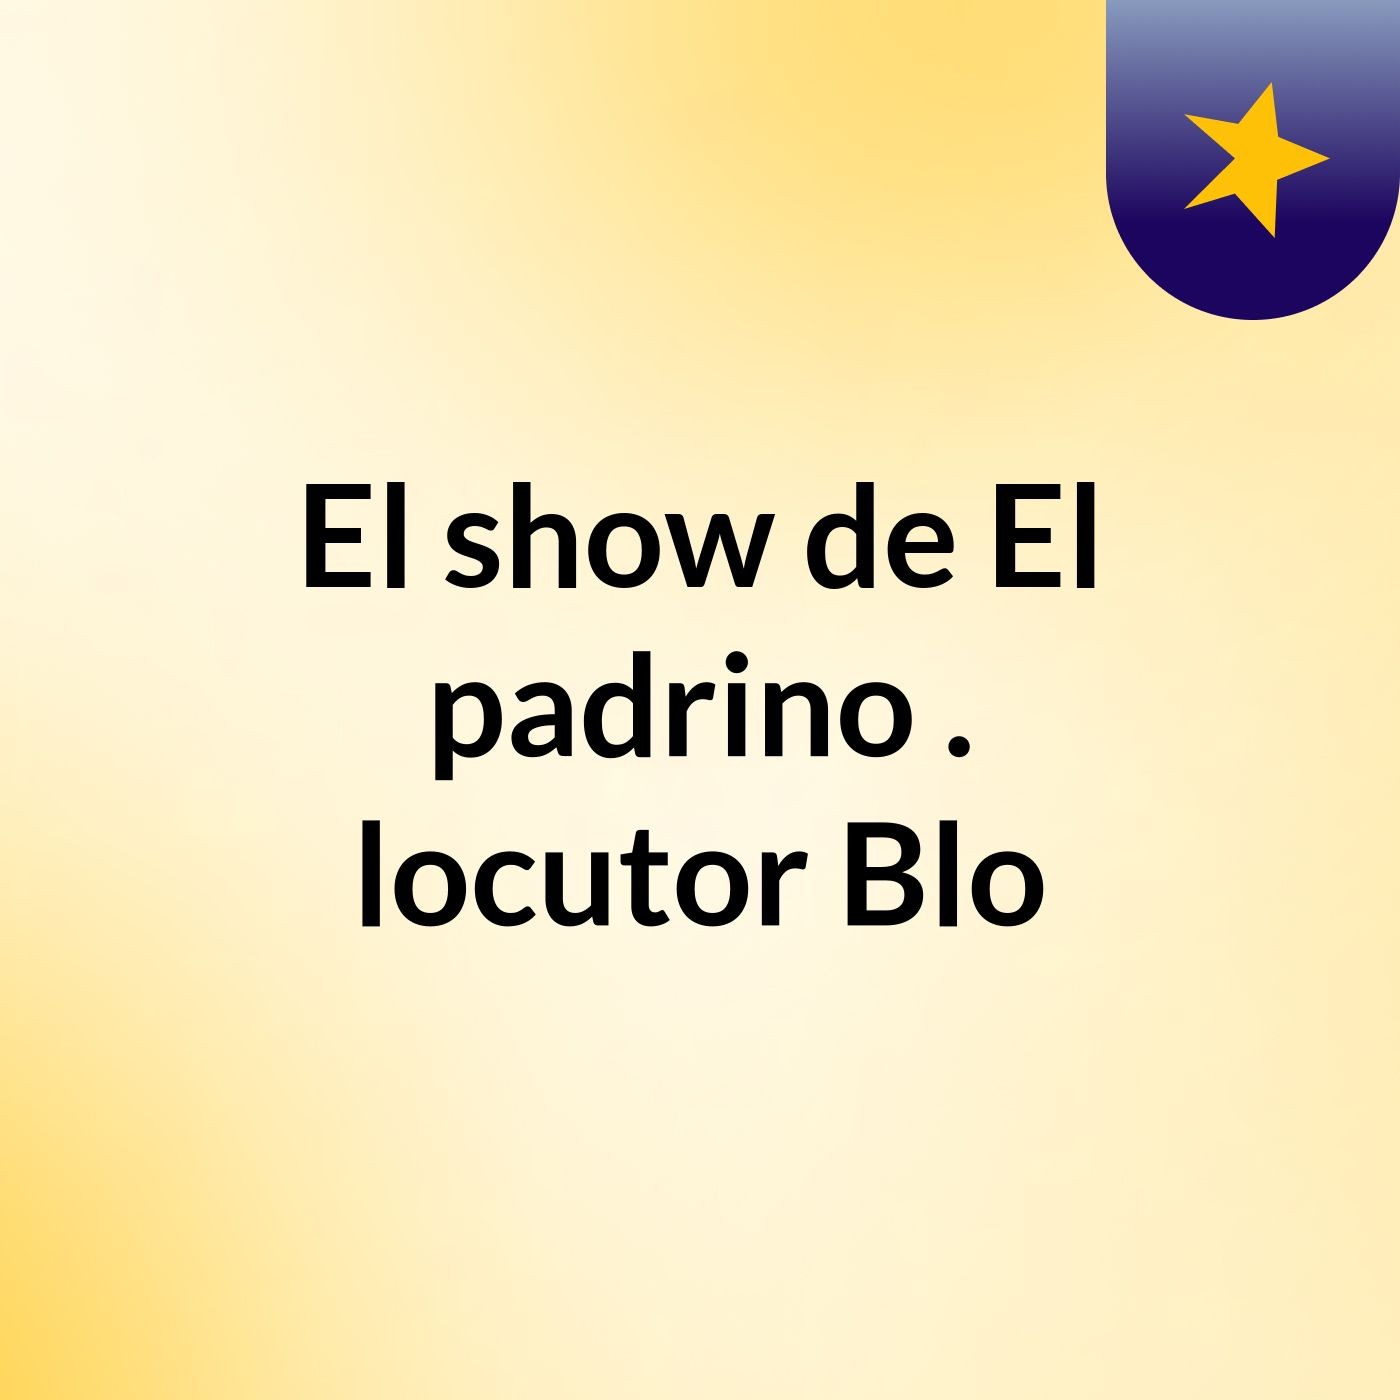 El show de El padrino .,  ,locutor, Blo